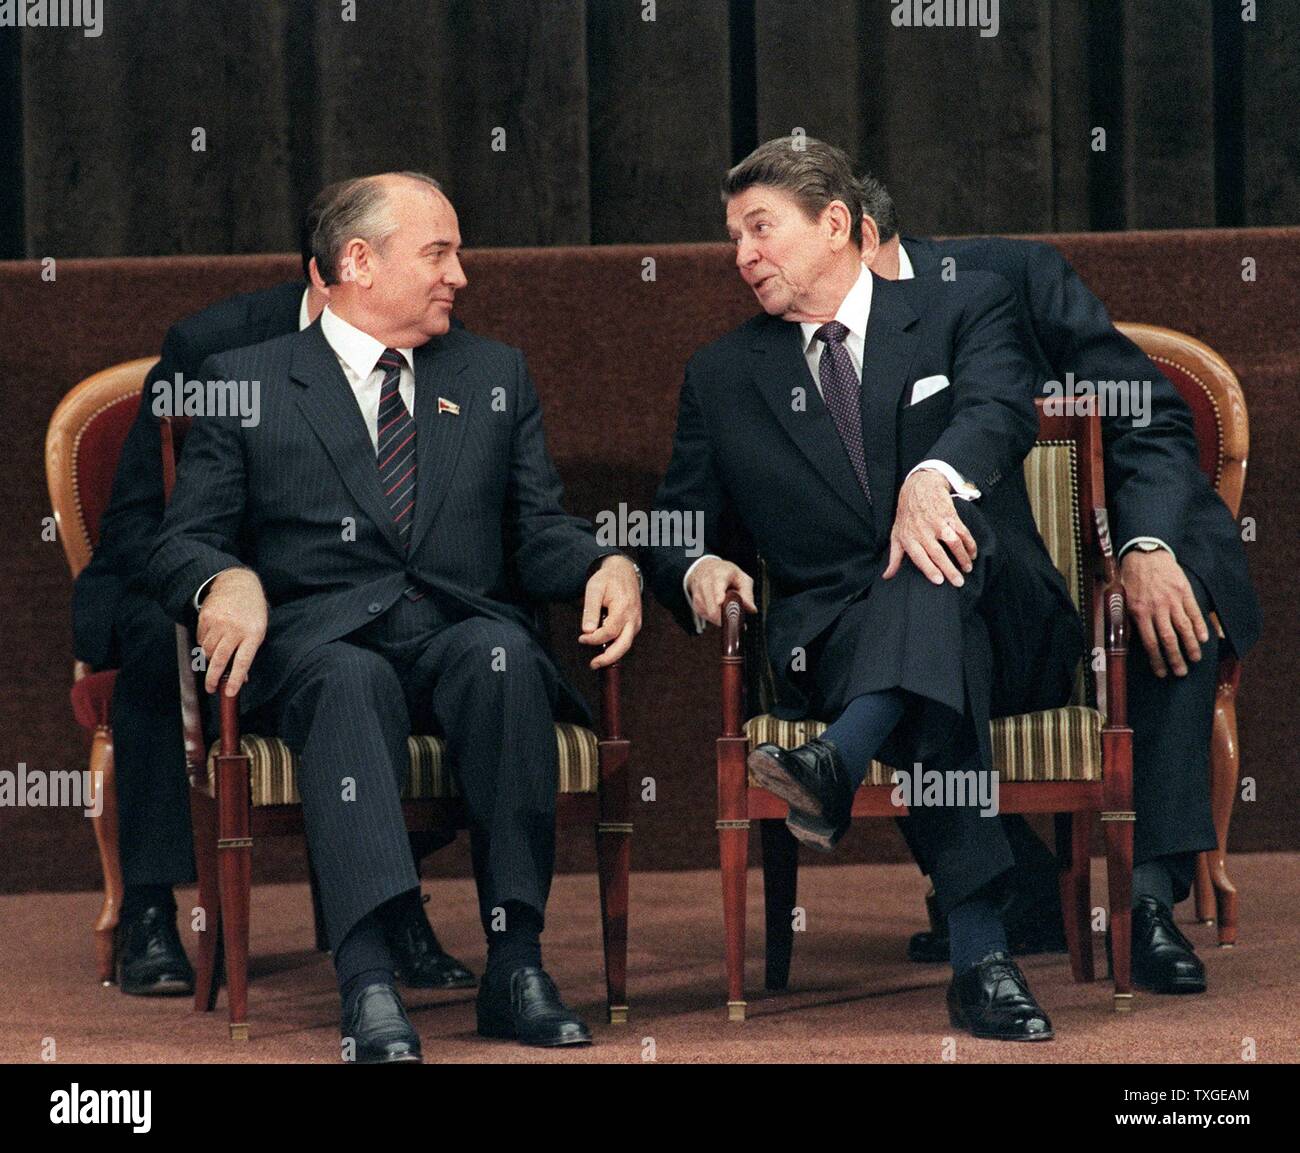 Foto von Präsident Ronald Reagan im Gespräch mit sowjetischen Generalsekretär der kommunistischen Partei der Sowjetunion Mikhail Gorbachev. Datierte 1985 Stockfoto